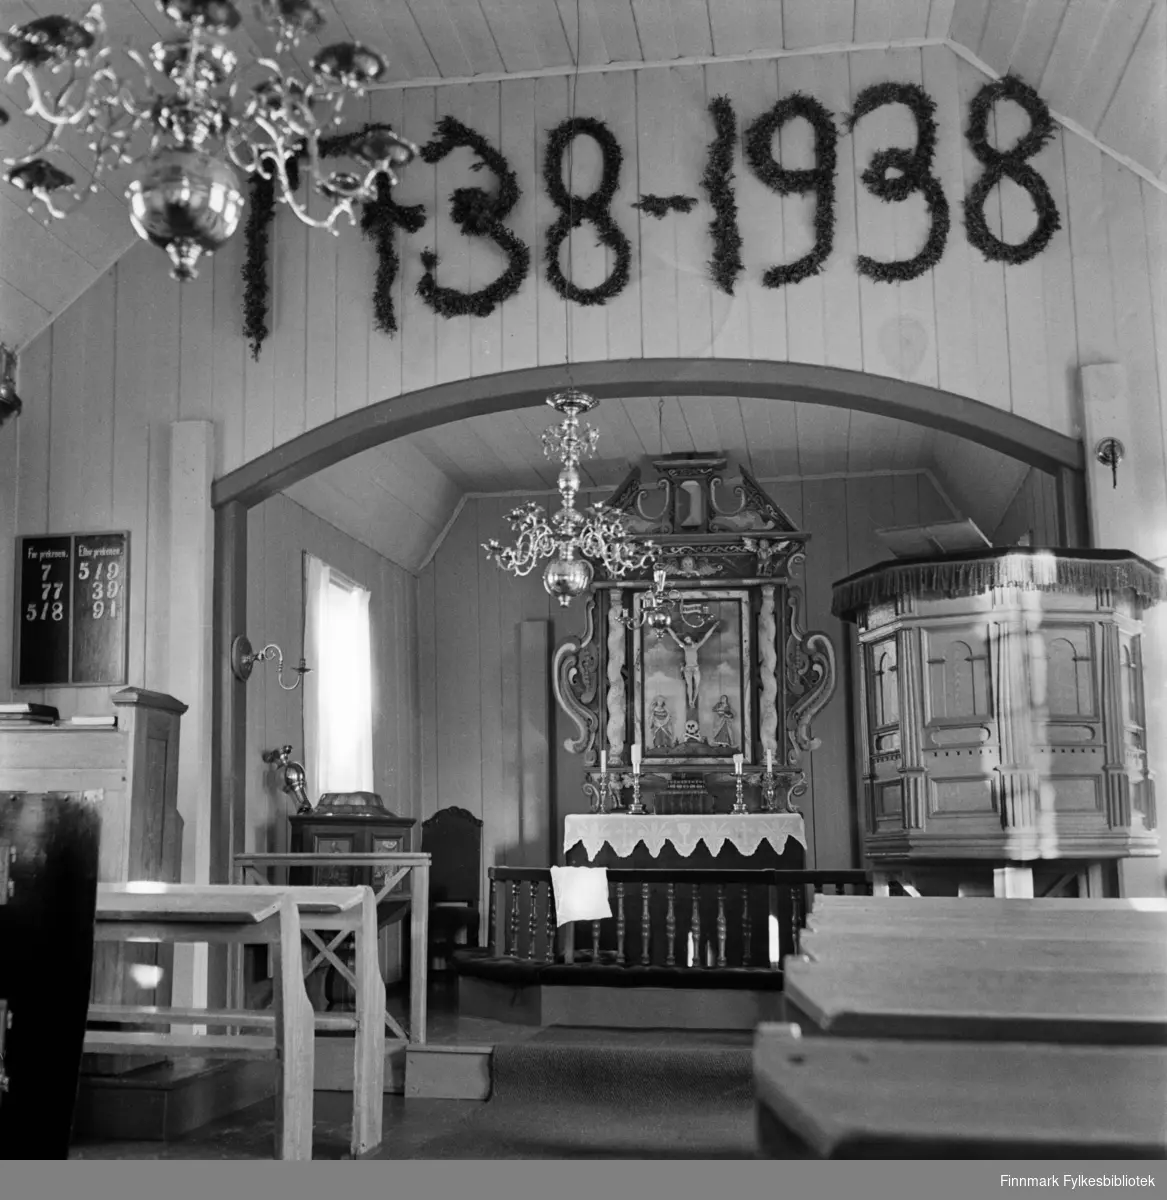 Interiør Kjøllefjord gamle kirke i 1940, med altertavle fra 1600-tallet. Årstallene utformet i bjørkekvist markerer 100 års jubileet i kirken. Kjøllefjord kirke var bygd i 1738 og sto i Kjøllefjord frem til den ble påtent av tyske soldater 4.november 1944 (Den brente jords taktikk). Kirken lå i Kjøllefjord prestegjeld som ble opprettet i 1685, da Skjøtningberg prestegjeld ble nedlat. Mye av inventaret stammet fra Skjøtningberg krike. Sakrestiet hadde en altertavle med årstallet 1662 som viser nattverdens innstiftelse. Denne skal tidligere å stått i Omgang kirke. Den opprinnelige kirken skal være byd mellom 1668 og 1683 og var en liten kirke bygget av rundtømmer. I kirken fantes også to klokker, hvorav den ene hadde inskripsjonen «Eine gude klock hin ick genant, den hört meinen klanck tho bargen int landt des late ick mi nicht vordreten. Heinrich Meier tho Bremen de oldermand he heft mi laten geten 1608. Restene av kirkeklokken kan ses i den nye Kjøllefjord kirke. Også den gotiske bibelen ble reddet av Hildur Hustad som tok med bibelen da hun flyktet til fjells. Bibelen oppbevares i dag i en bankboks i Kjøllefjord. 

Norsk folkemuseum har også et bilde av interiøret, tatt i 1905. Jfr. Johan J. Meyer (1860-1940) og Erling Gjones (1898-1990) samlinger. Begge var ansatt som arkitekter og professorer ved NTH i Trondheim og arbeidet med eldre norsk bygningskunst. Ref Meyers verk: «Fortids Kunst i Norges bygder».